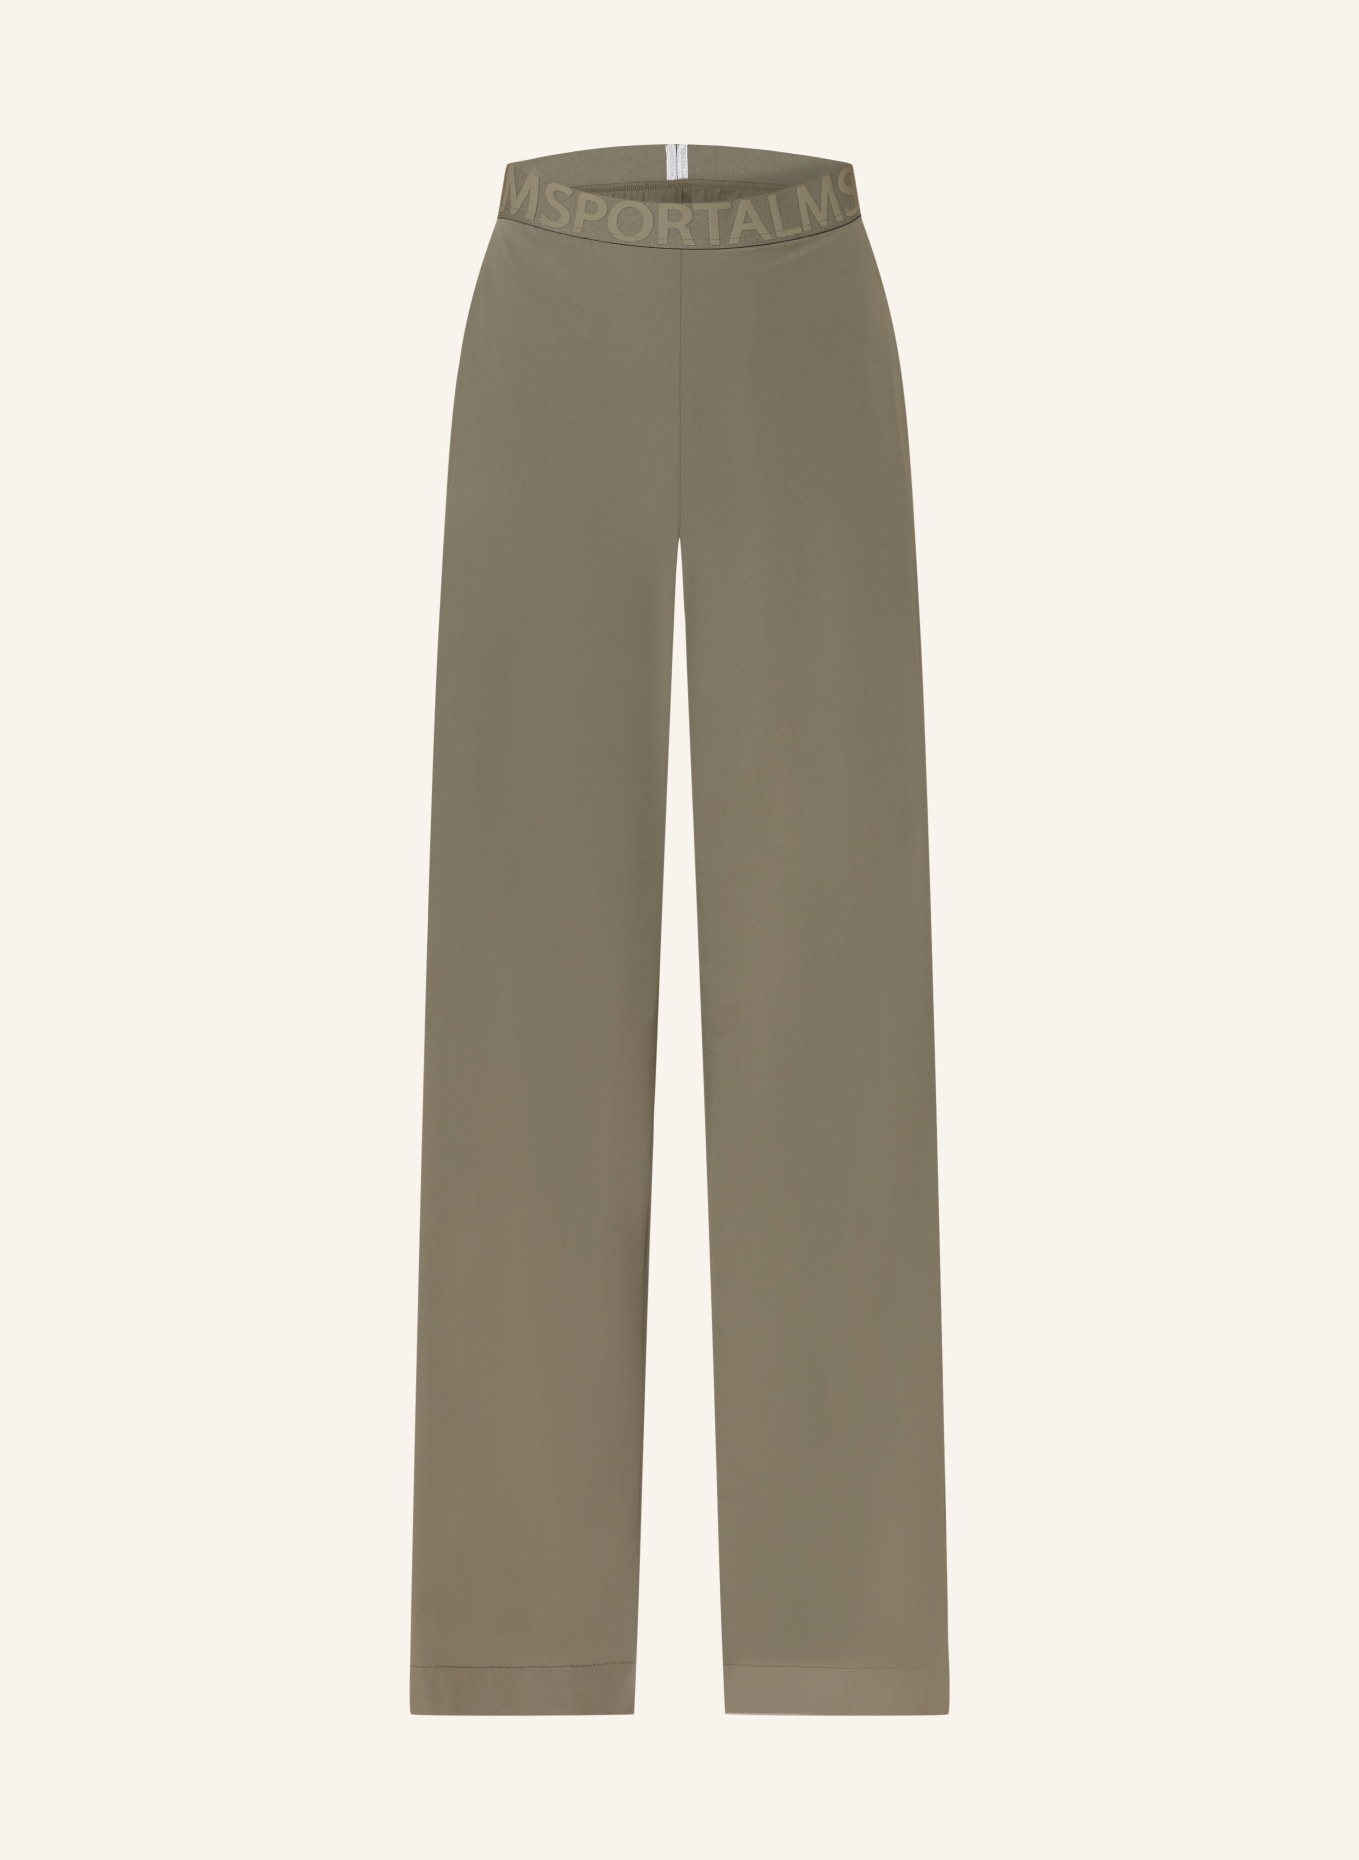 ULLI EHRLICH SPORTALM Trousers, Color: KHAKI (Image 1)